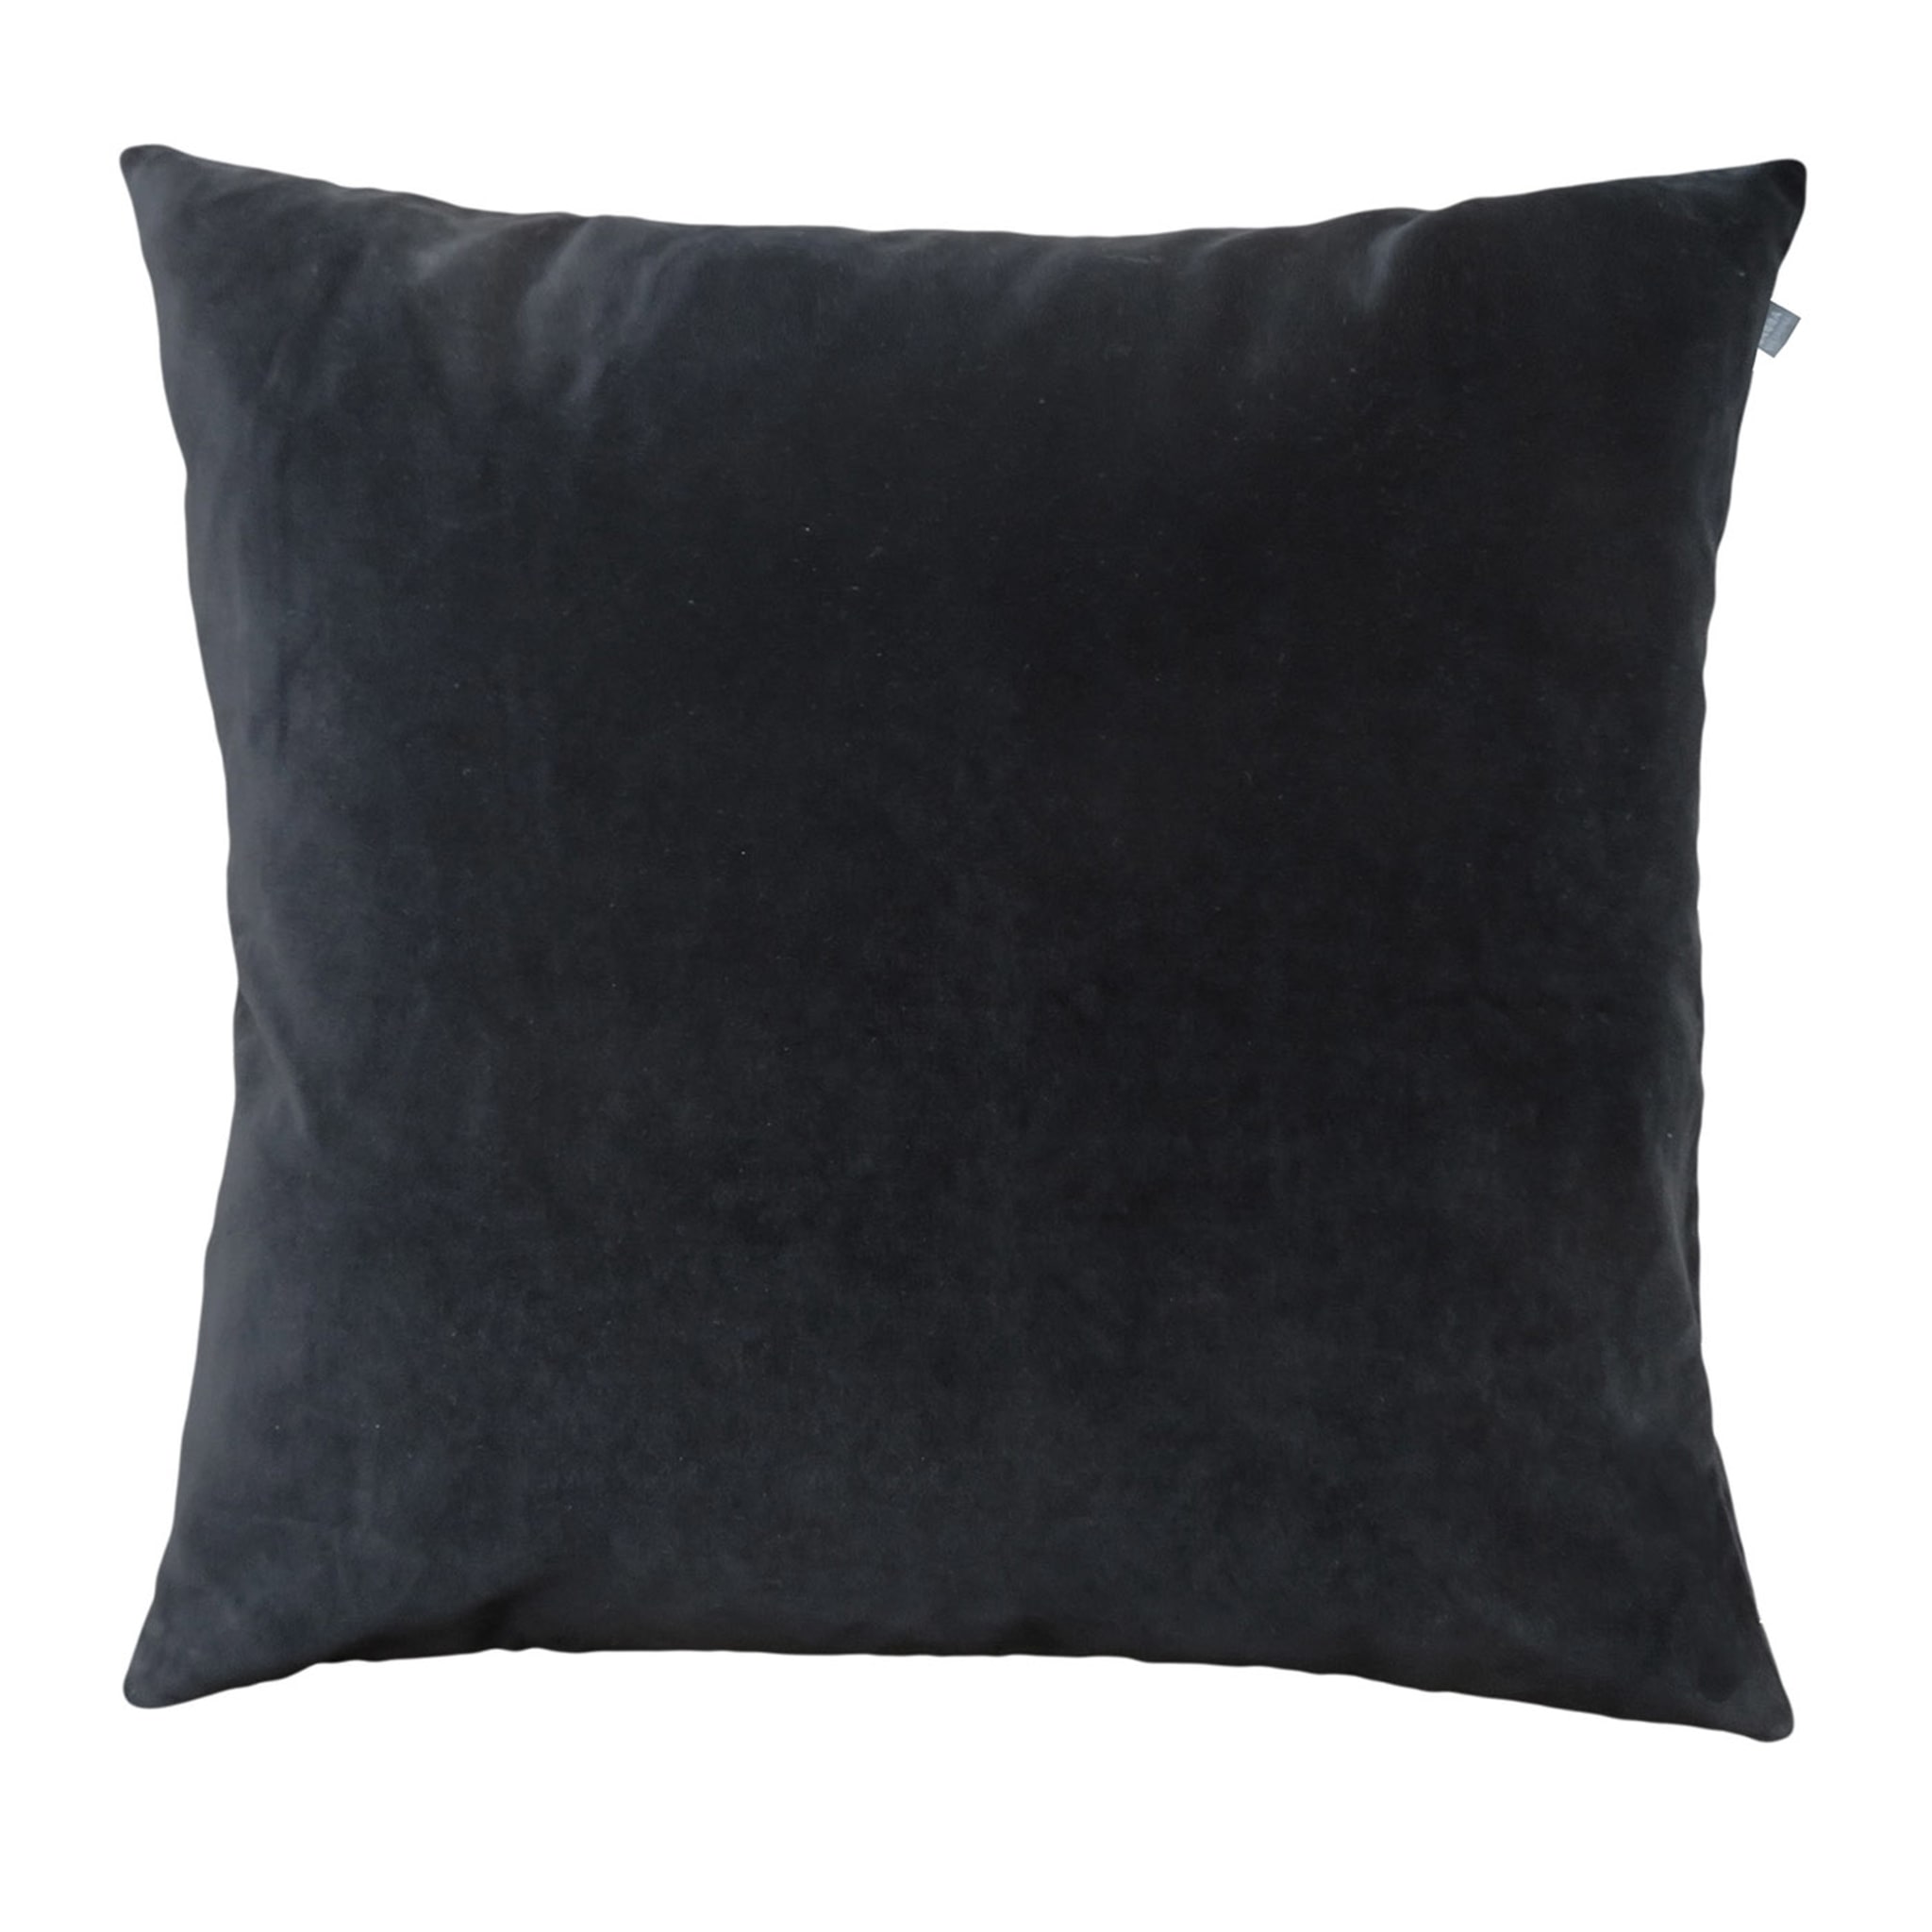 Black Velvet Large Cushion Cover - Main view